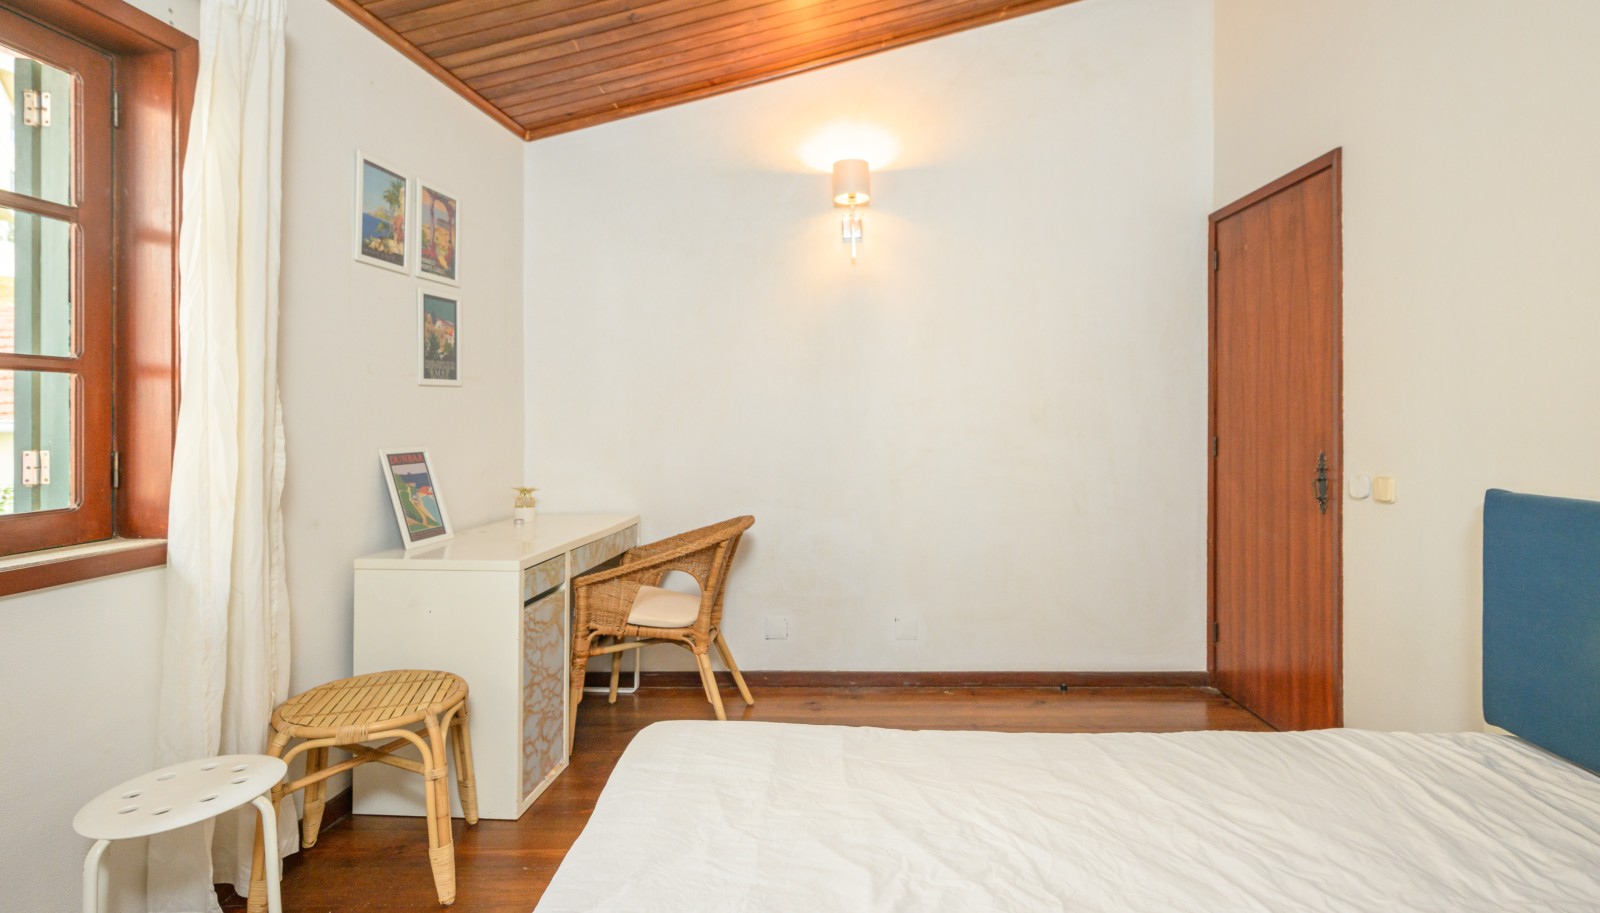 2 bedroom villa with views over the Douro river, in Foz Velha, Porto _243575